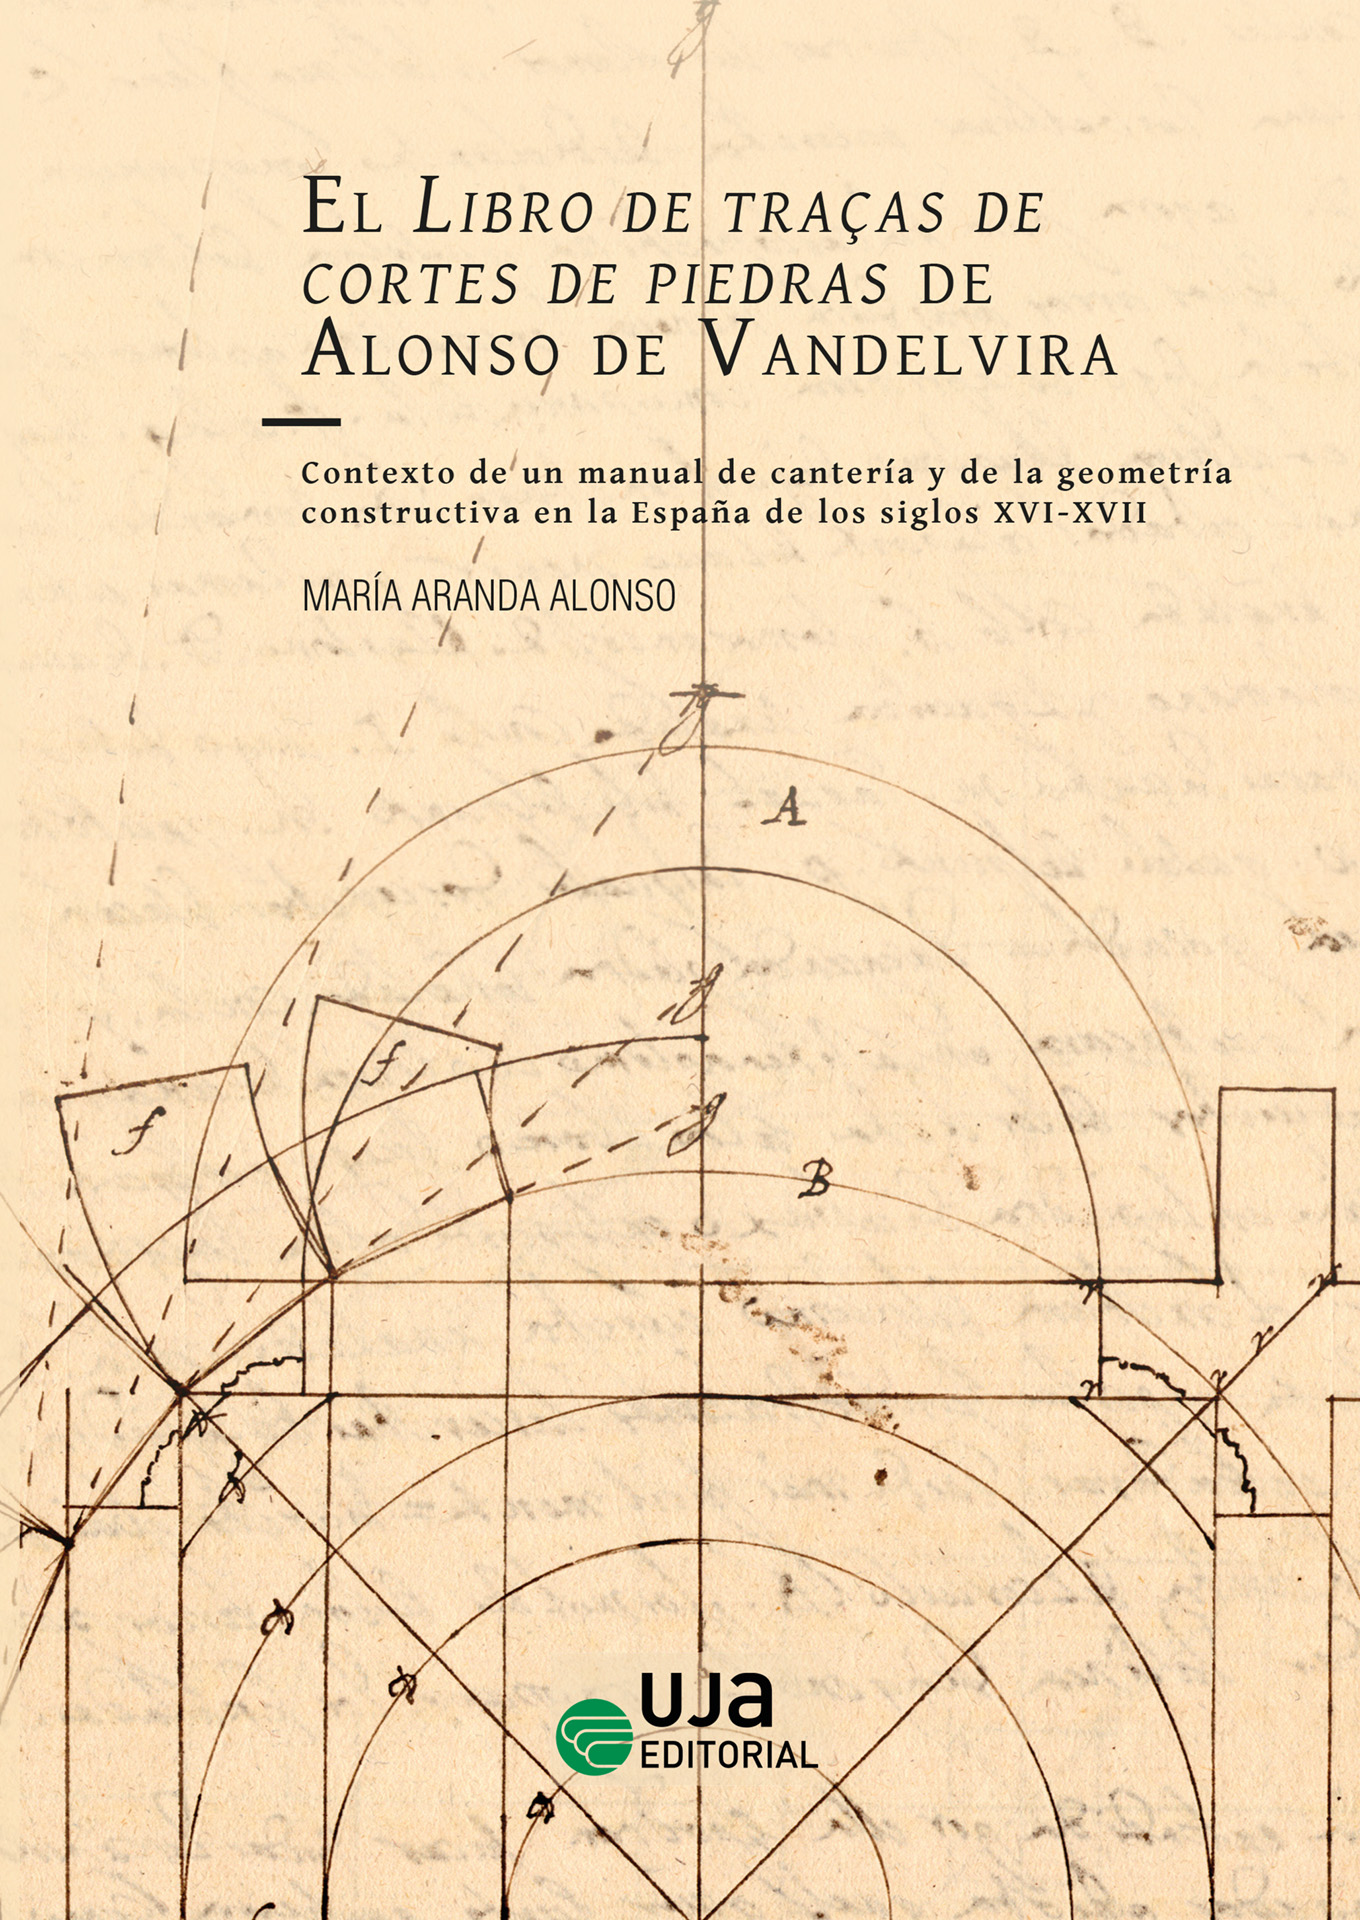 El Libro de traças de cortes de piedras de Alonso de Vandelvira